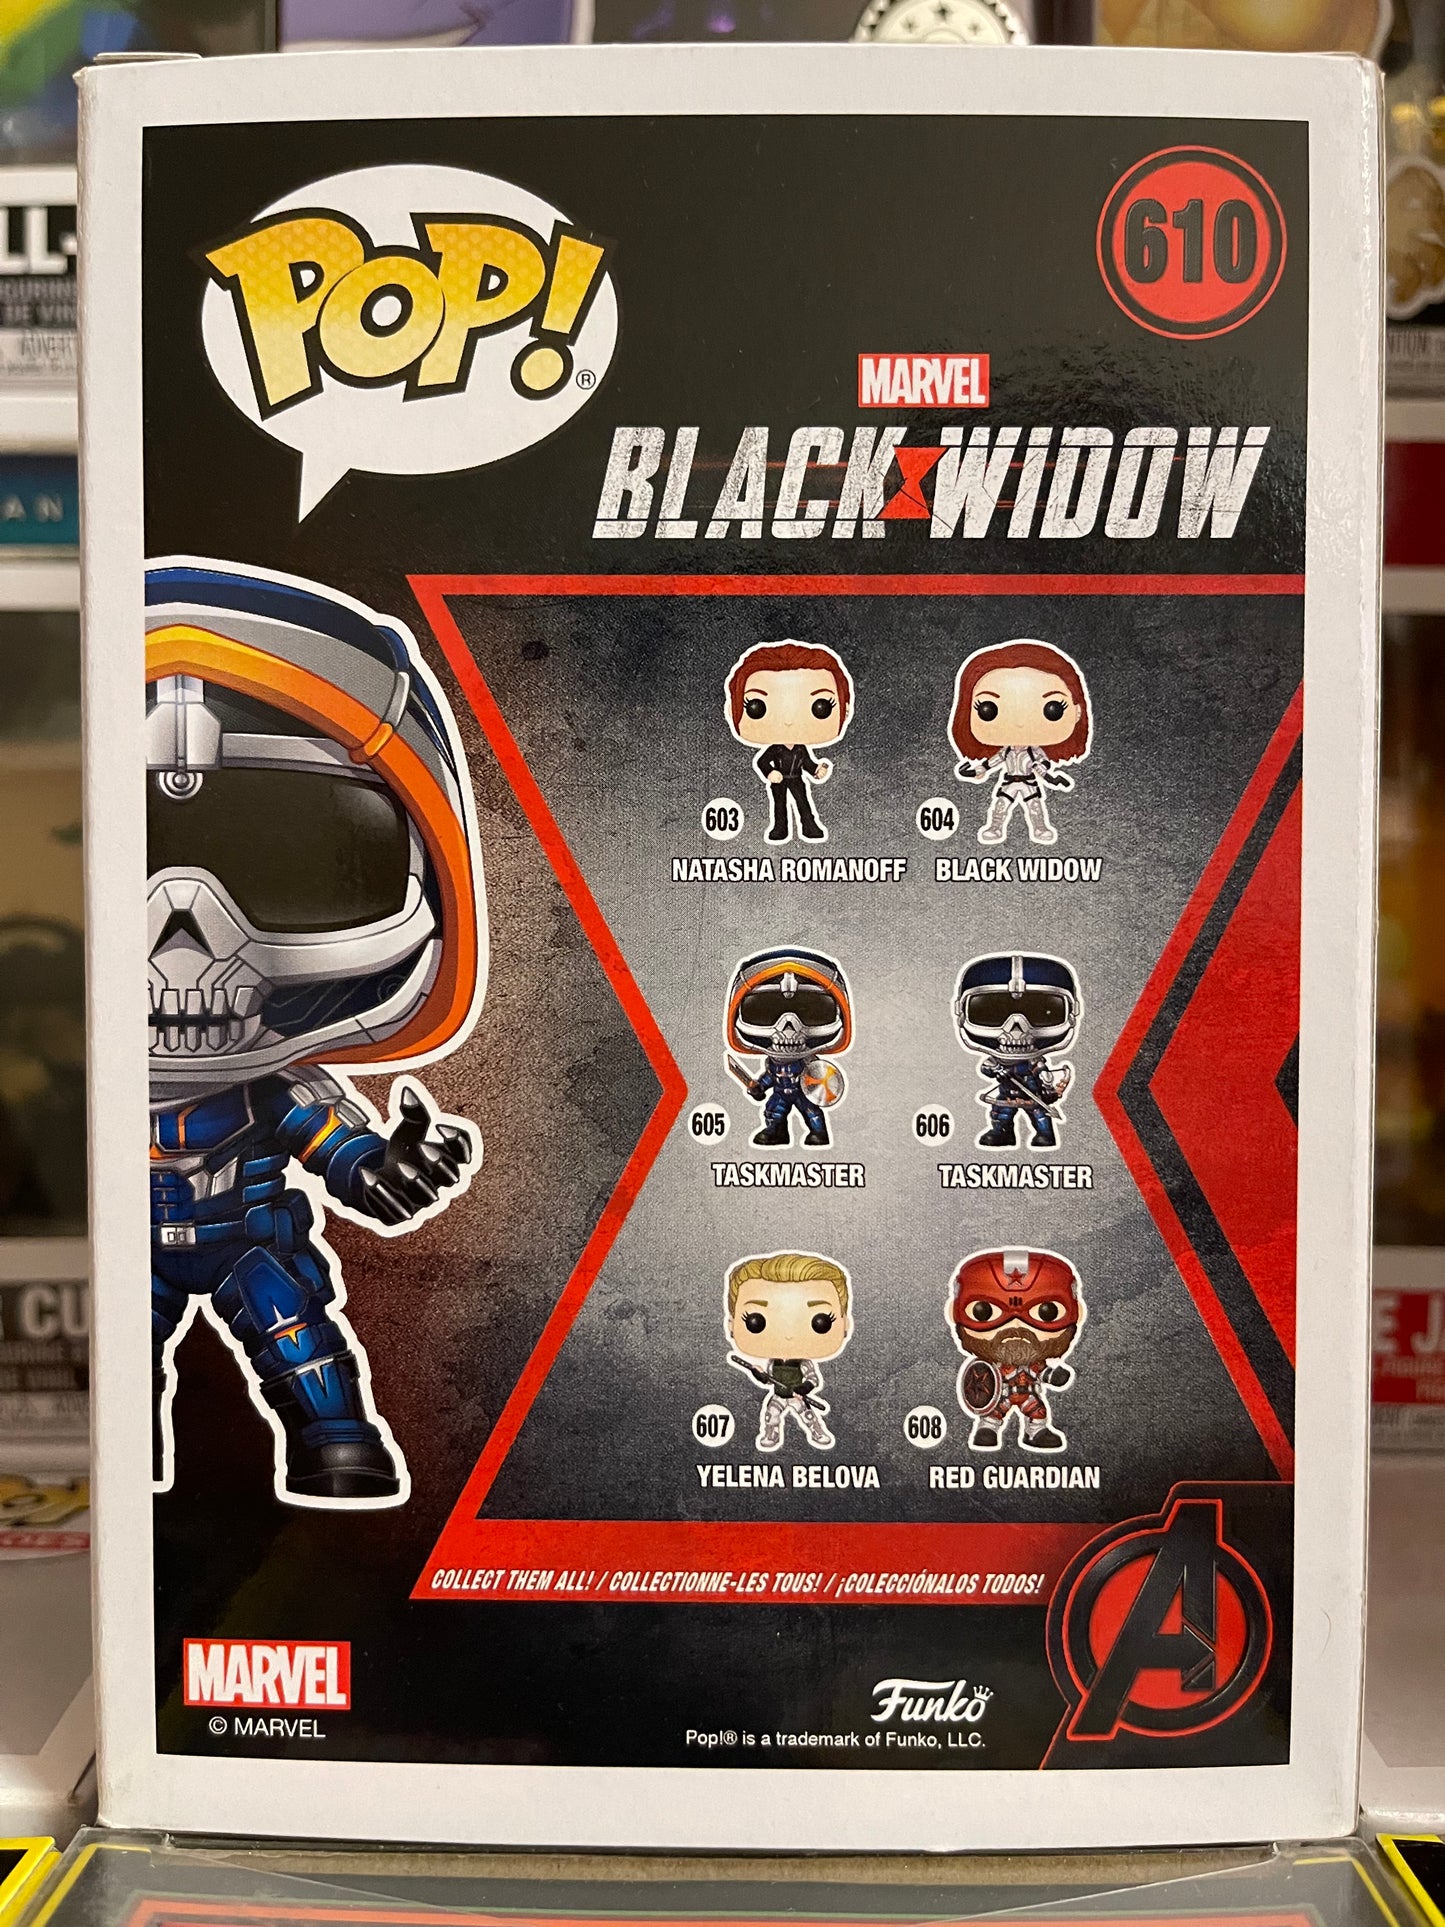 Marvel Black Widow - Taskmaster (610)